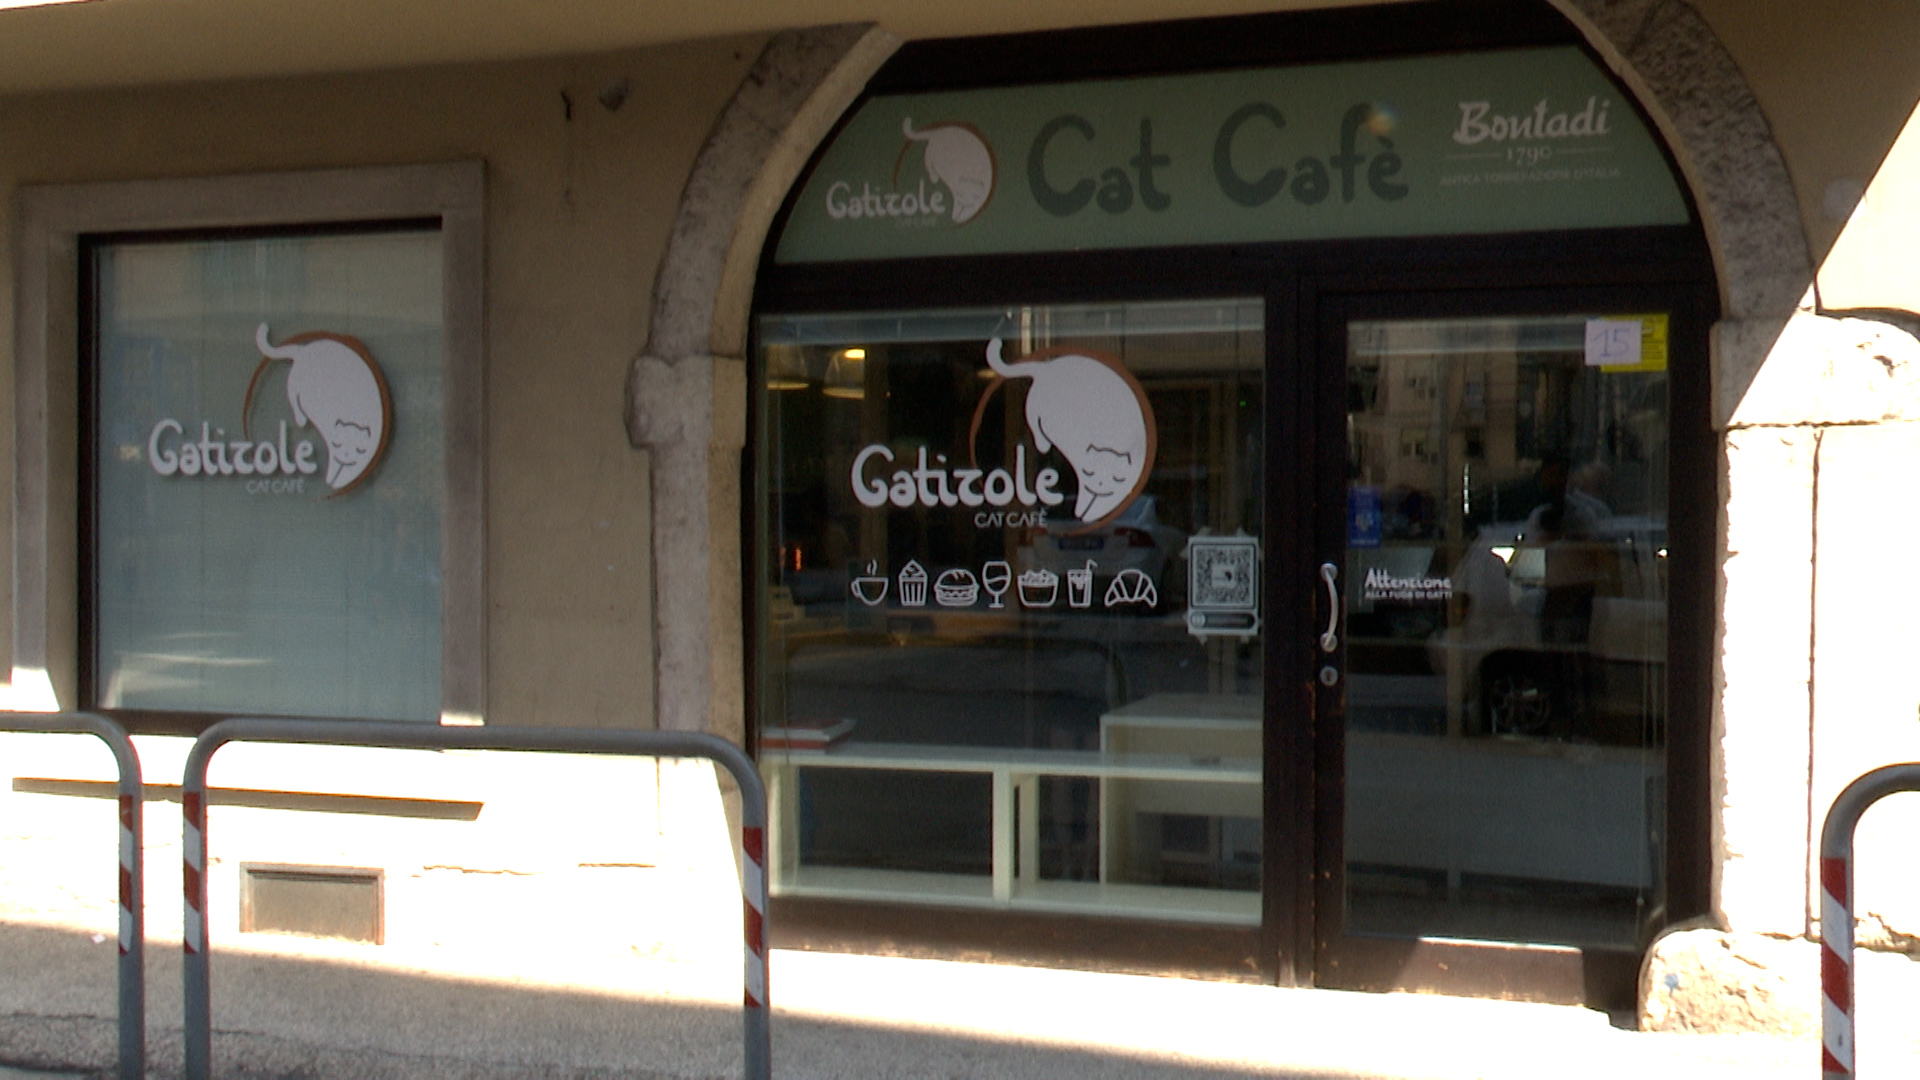 Il Gatizole Cat Cafè fa subito il pieno: 200 clienti al giorno - News  Trentino TV